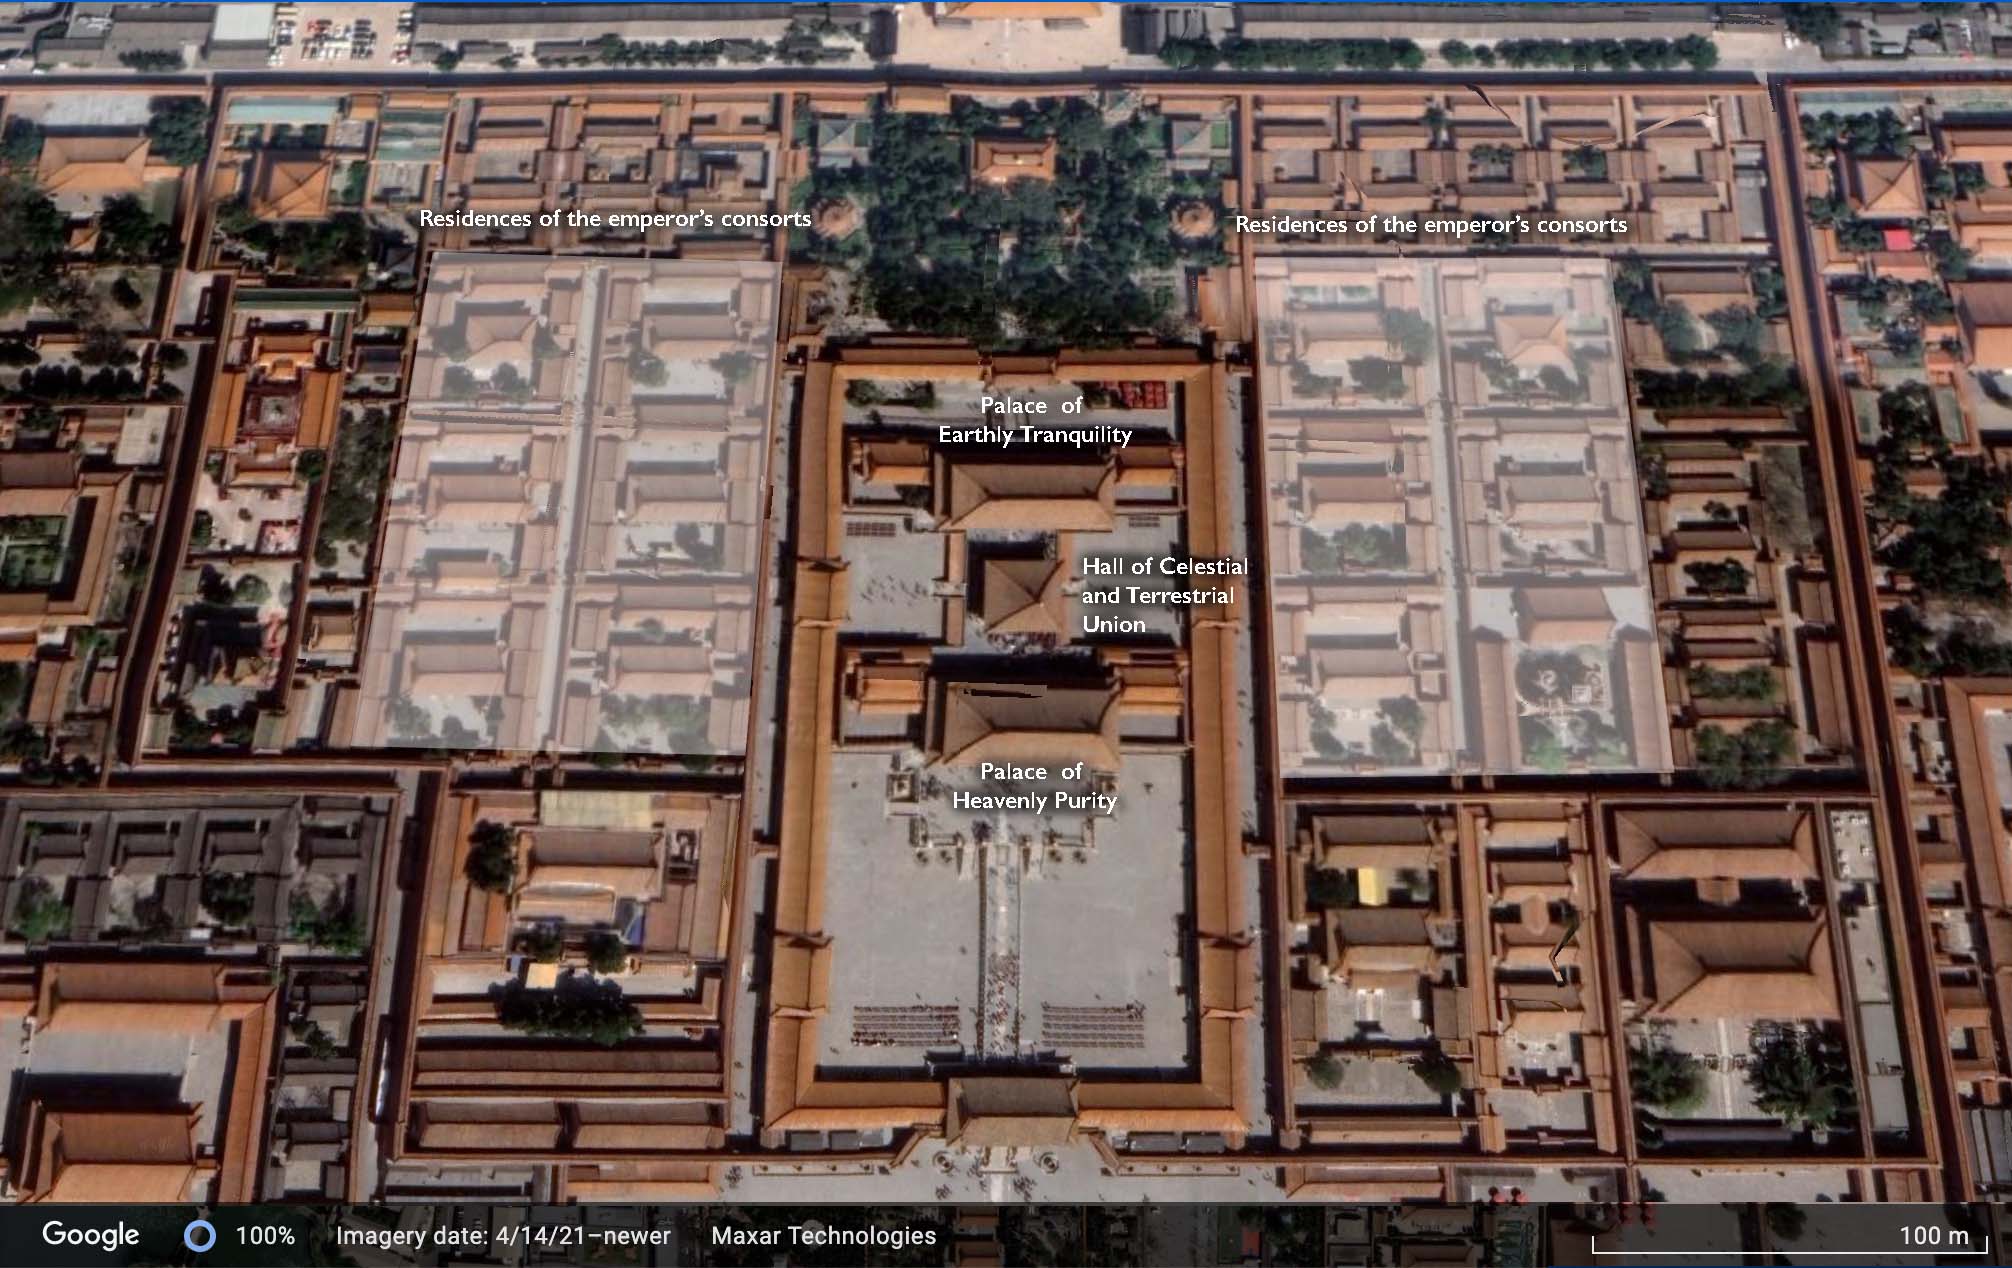 Qianlong Garden Interpretation Center will open Forbidden City palace to  public